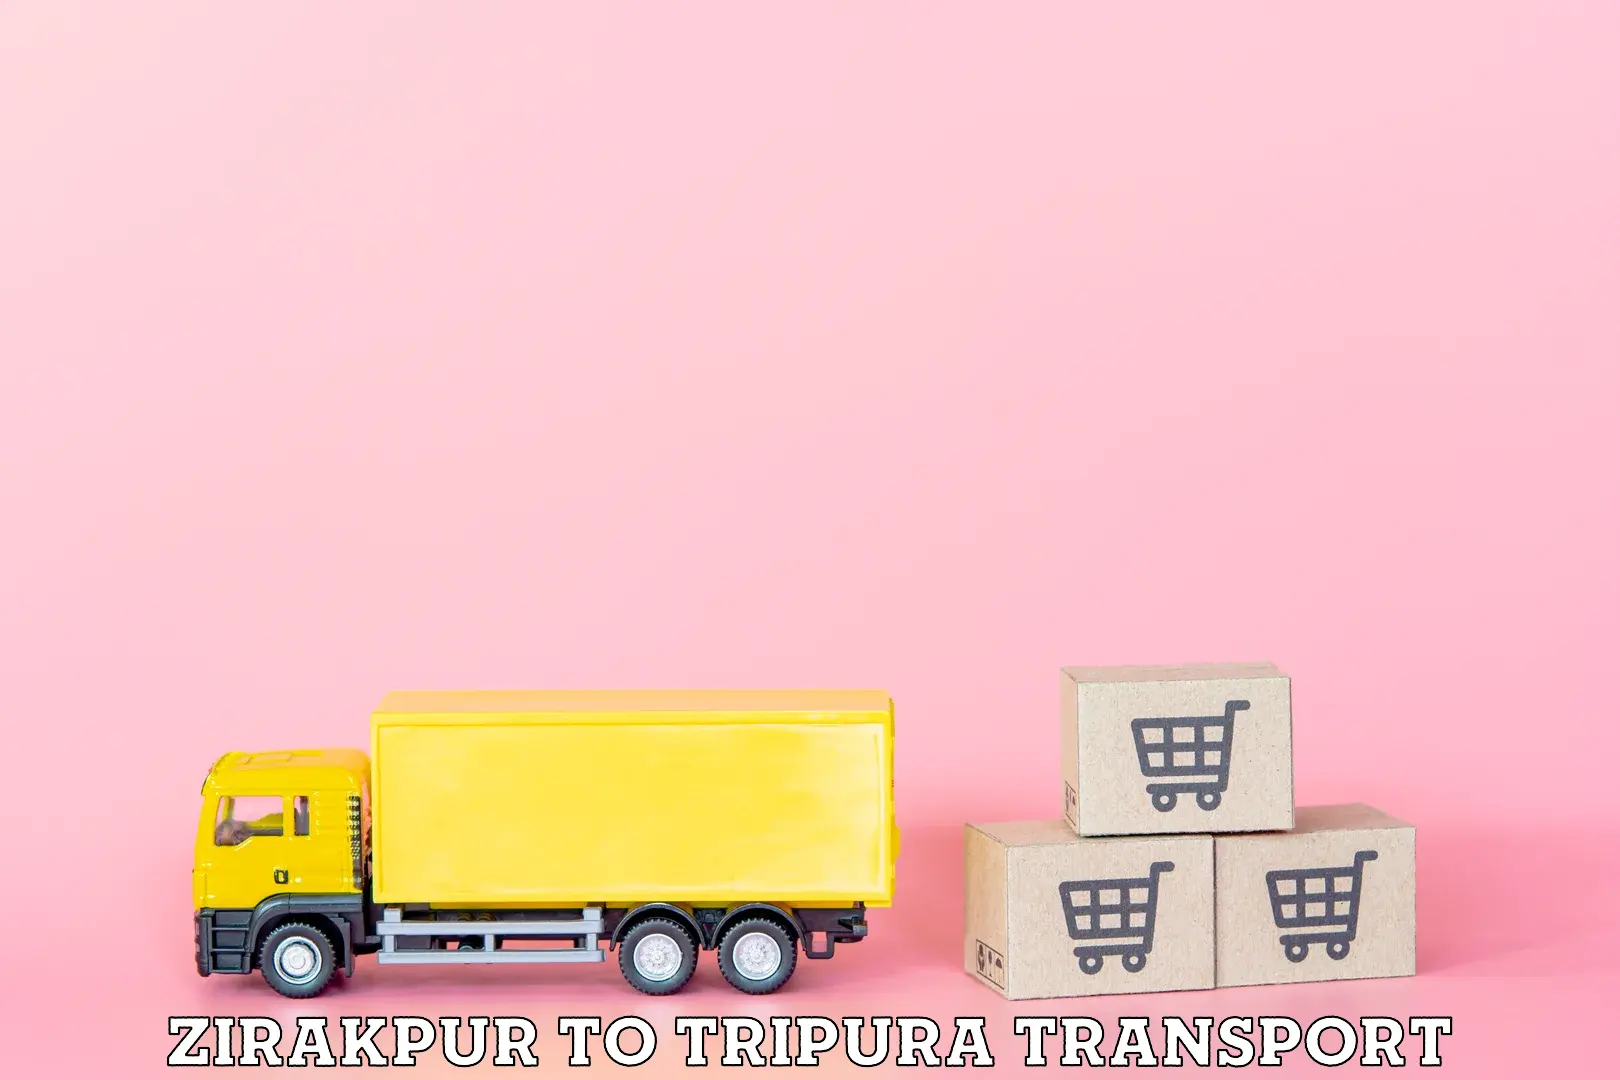 International cargo transportation services Zirakpur to IIIT Agartala